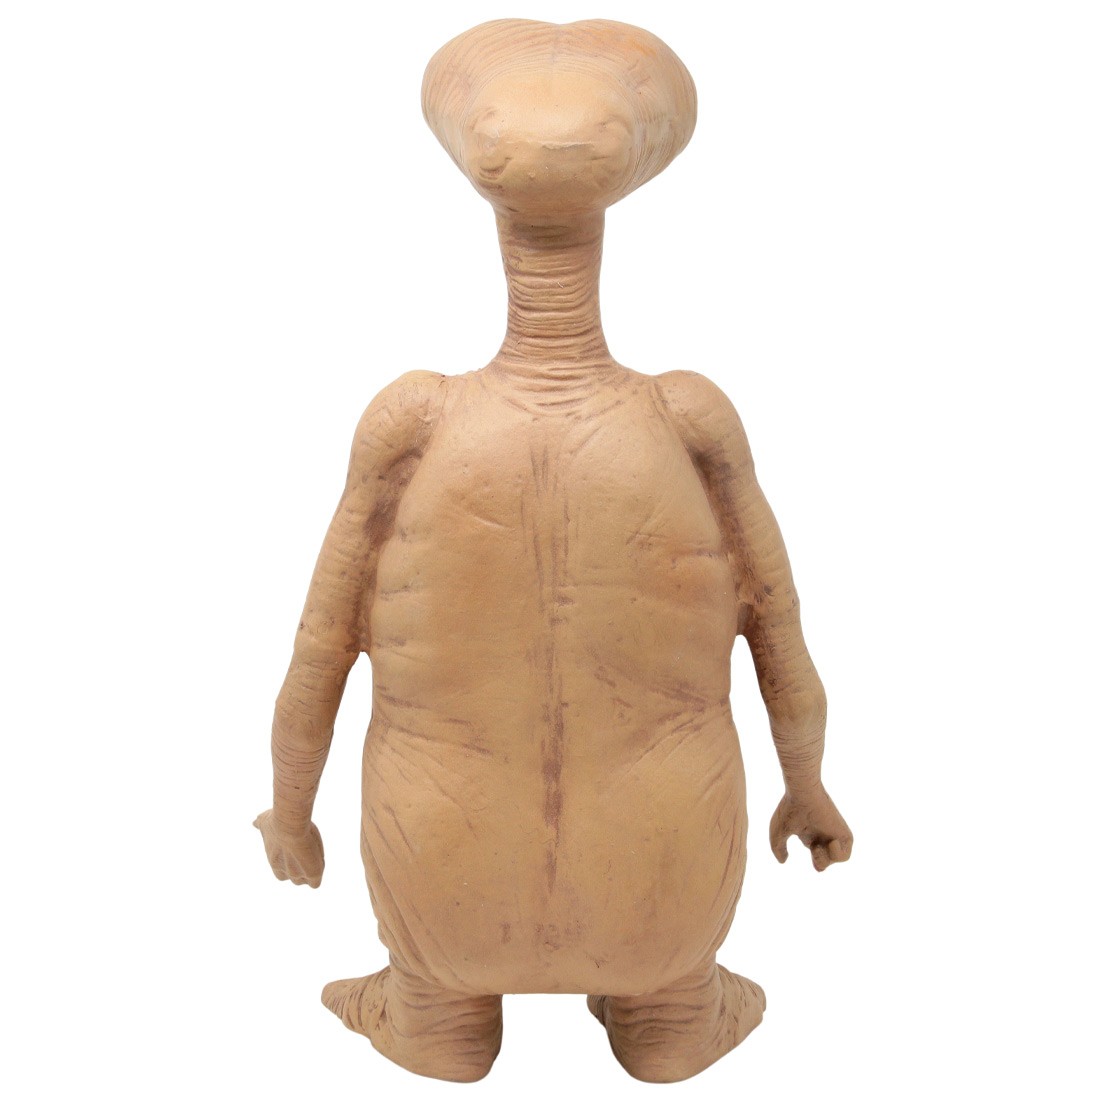 NECA E.T. The Extra-Terrestrial Prop Replica 12 Inch Foam Figure brown